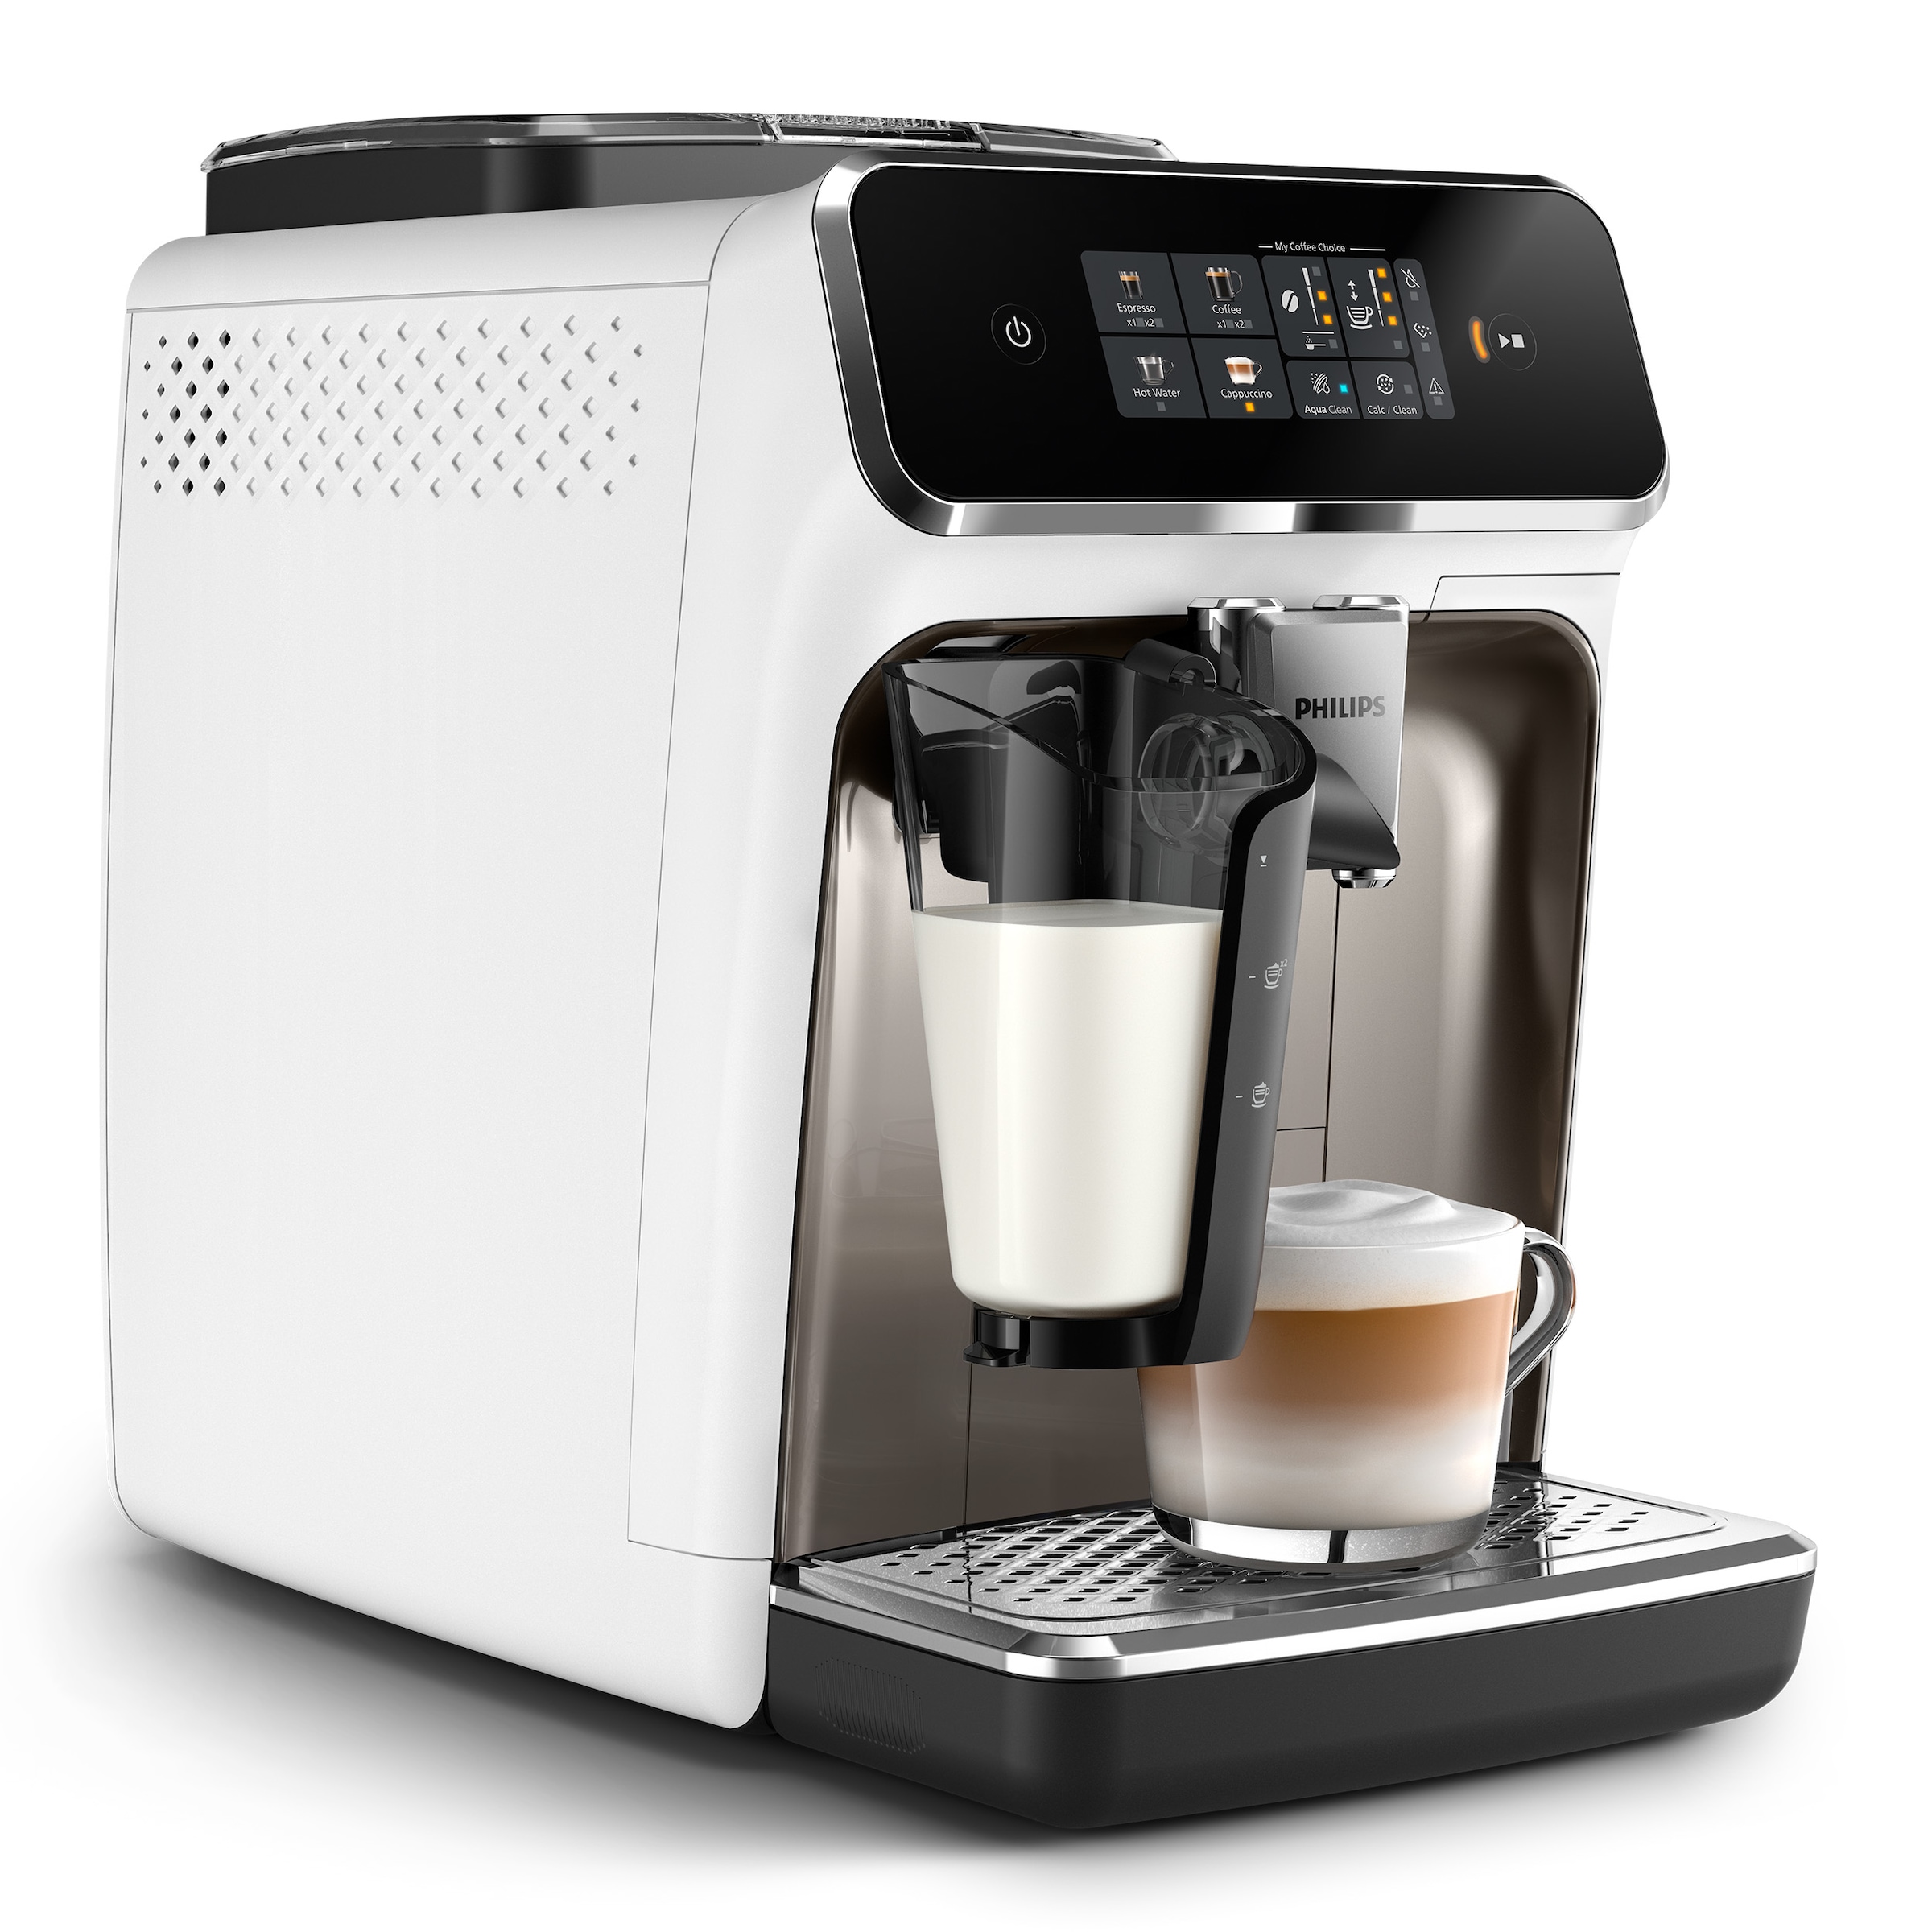 Philips Kaffeevollautomat »EP2333/40 2300 Series«, 4 Kaffeespezialitäten, mit LatteGo-Milchsystem, Weiß und Chrom